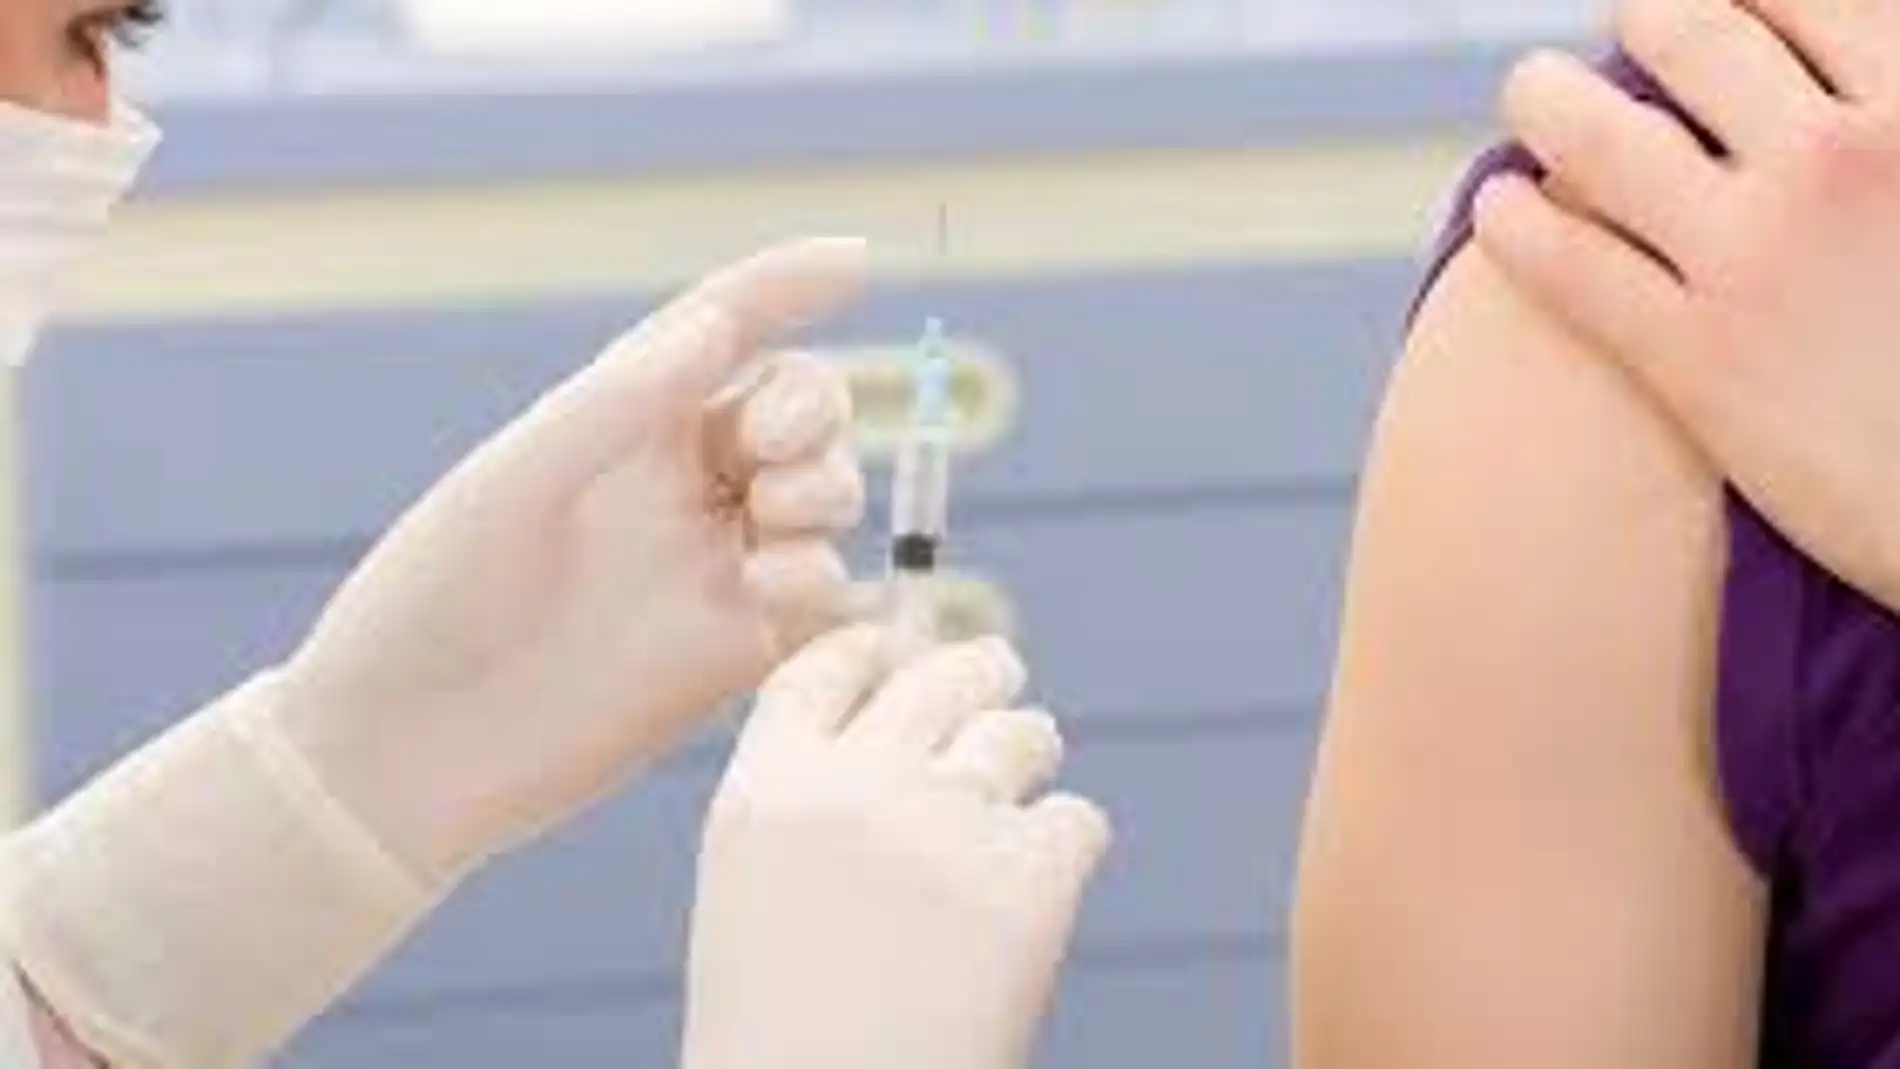 Vacunación 